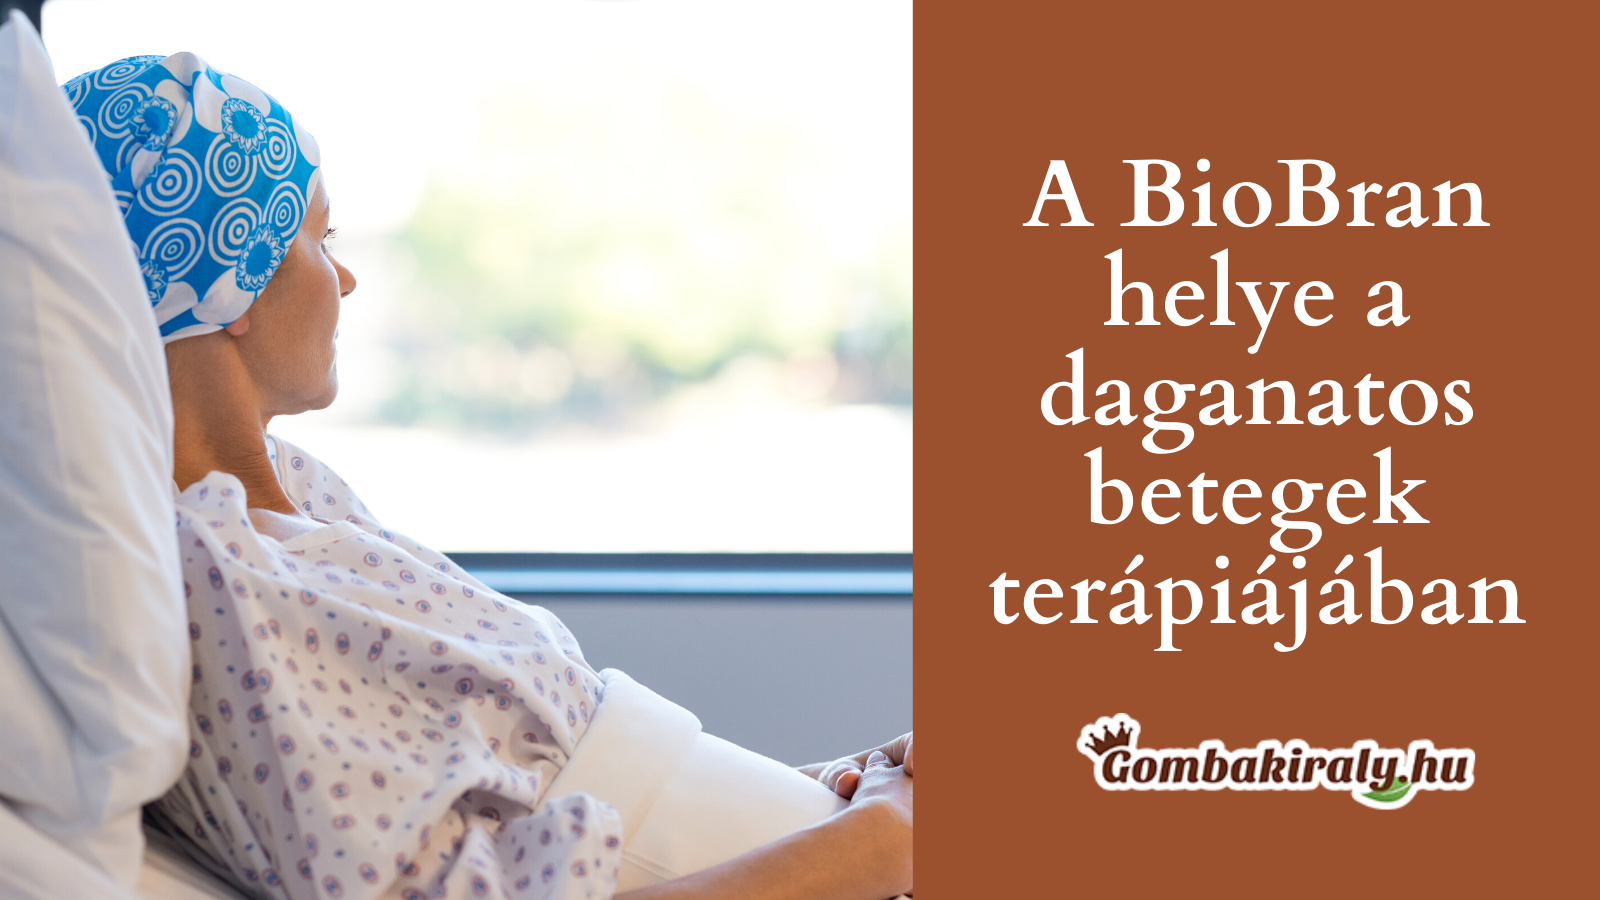 BioBran® helye a daganatos betegek terápiájában